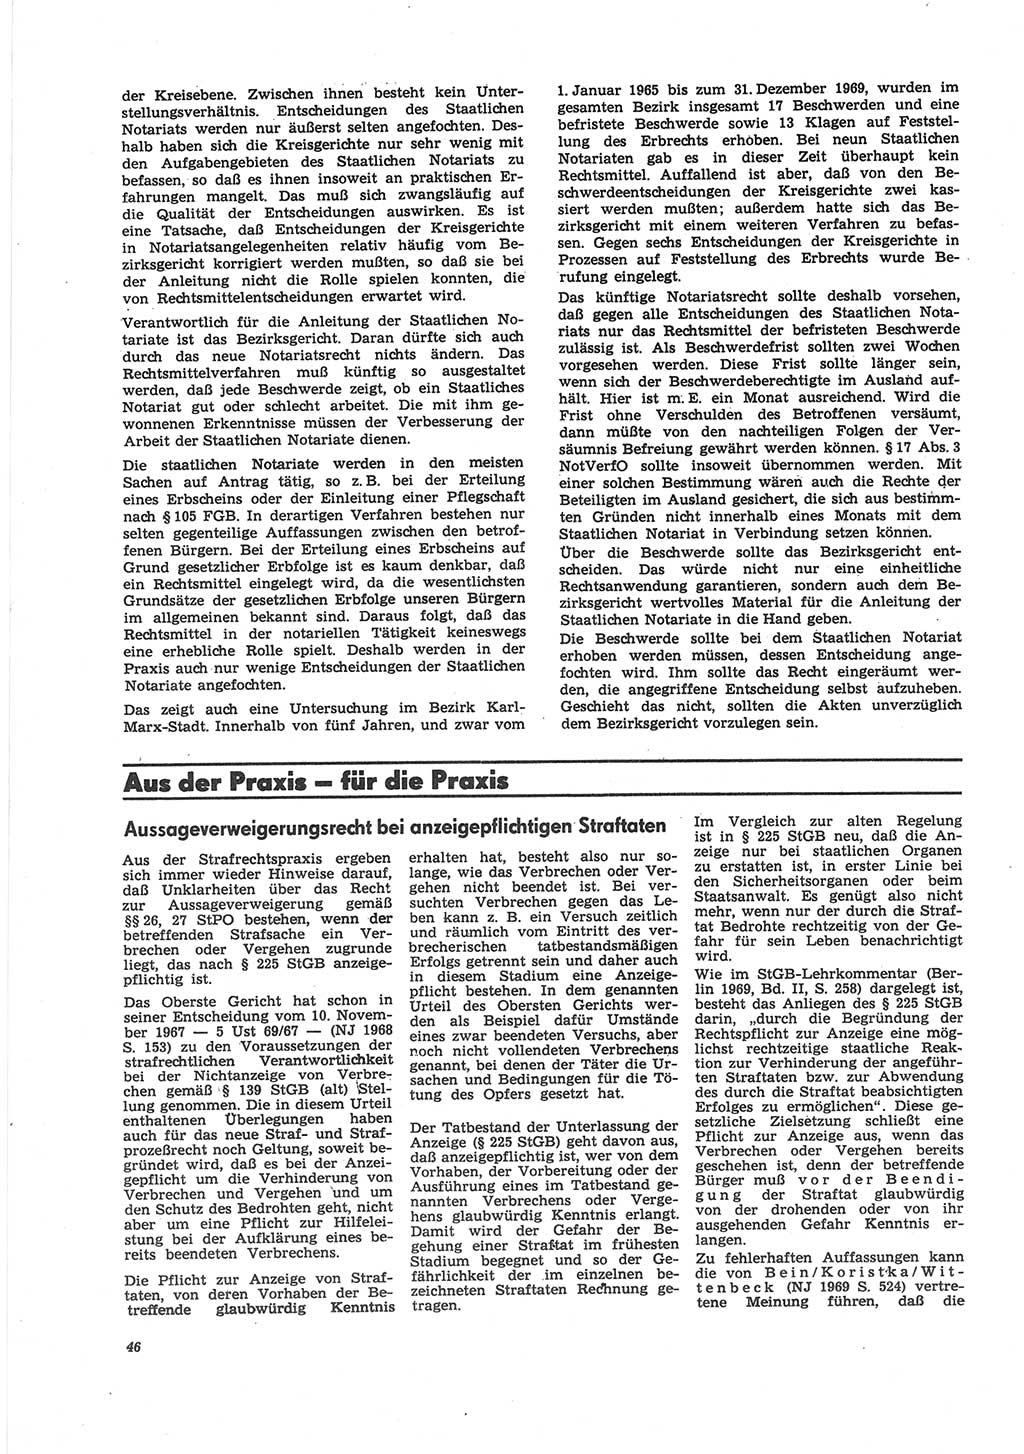 Neue Justiz (NJ), Zeitschrift für Recht und Rechtswissenschaft [Deutsche Demokratische Republik (DDR)], 25. Jahrgang 1971, Seite 46 (NJ DDR 1971, S. 46)